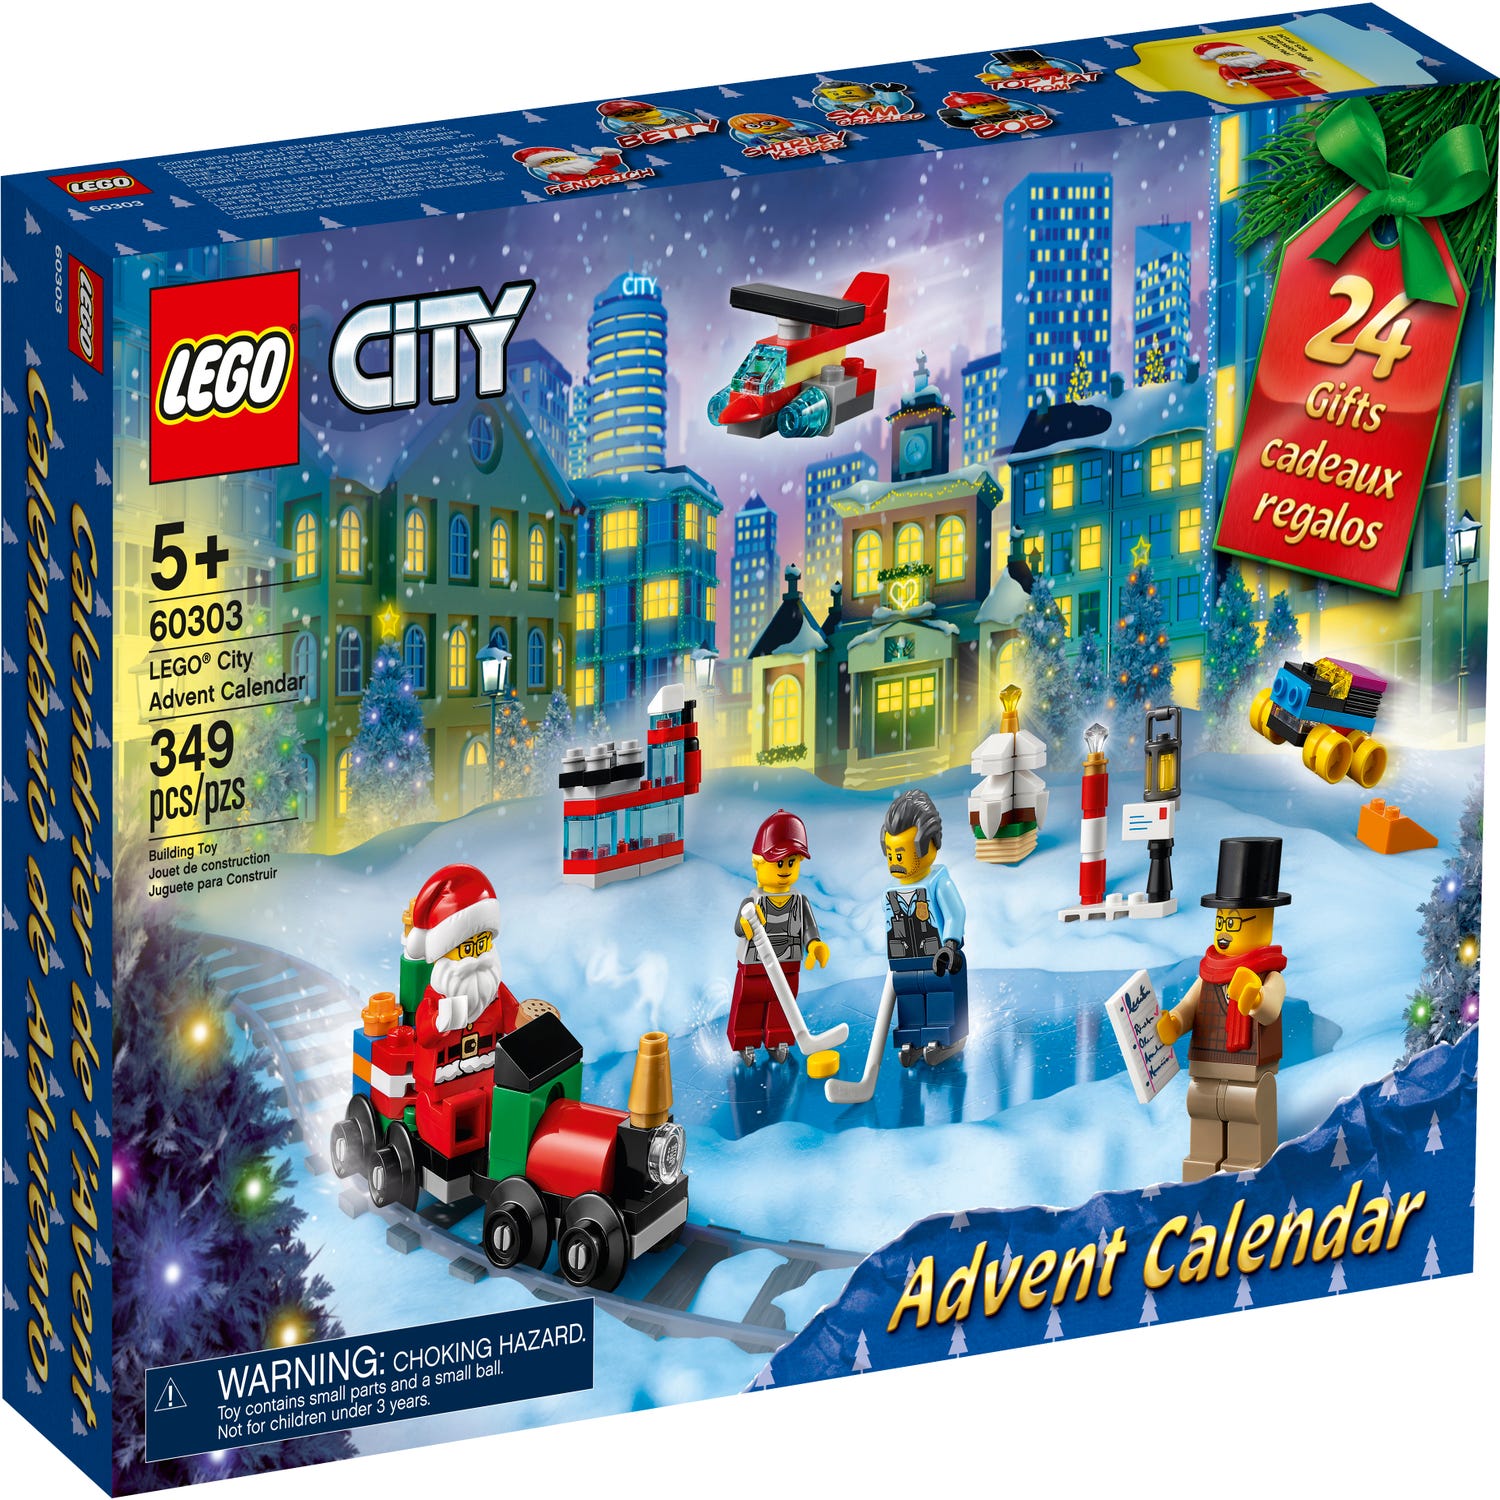 LEGO® City Advent Calendar 2023 60381, City